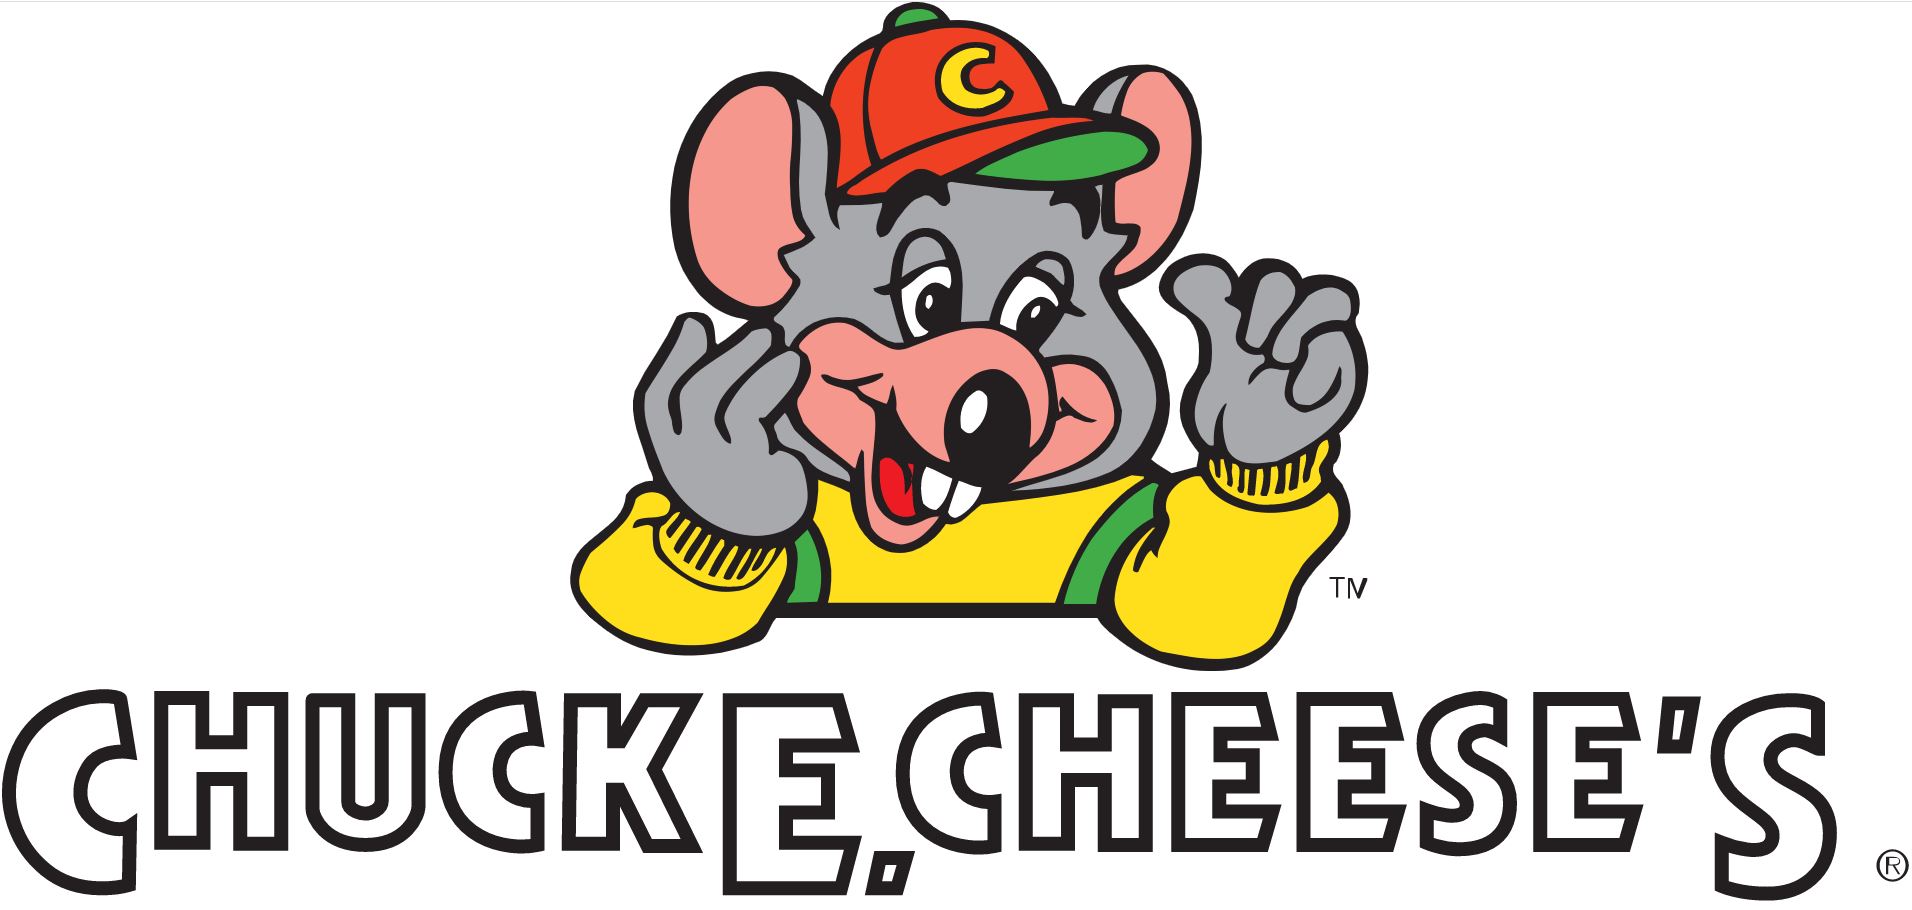 Chuck E. Cheese's logo